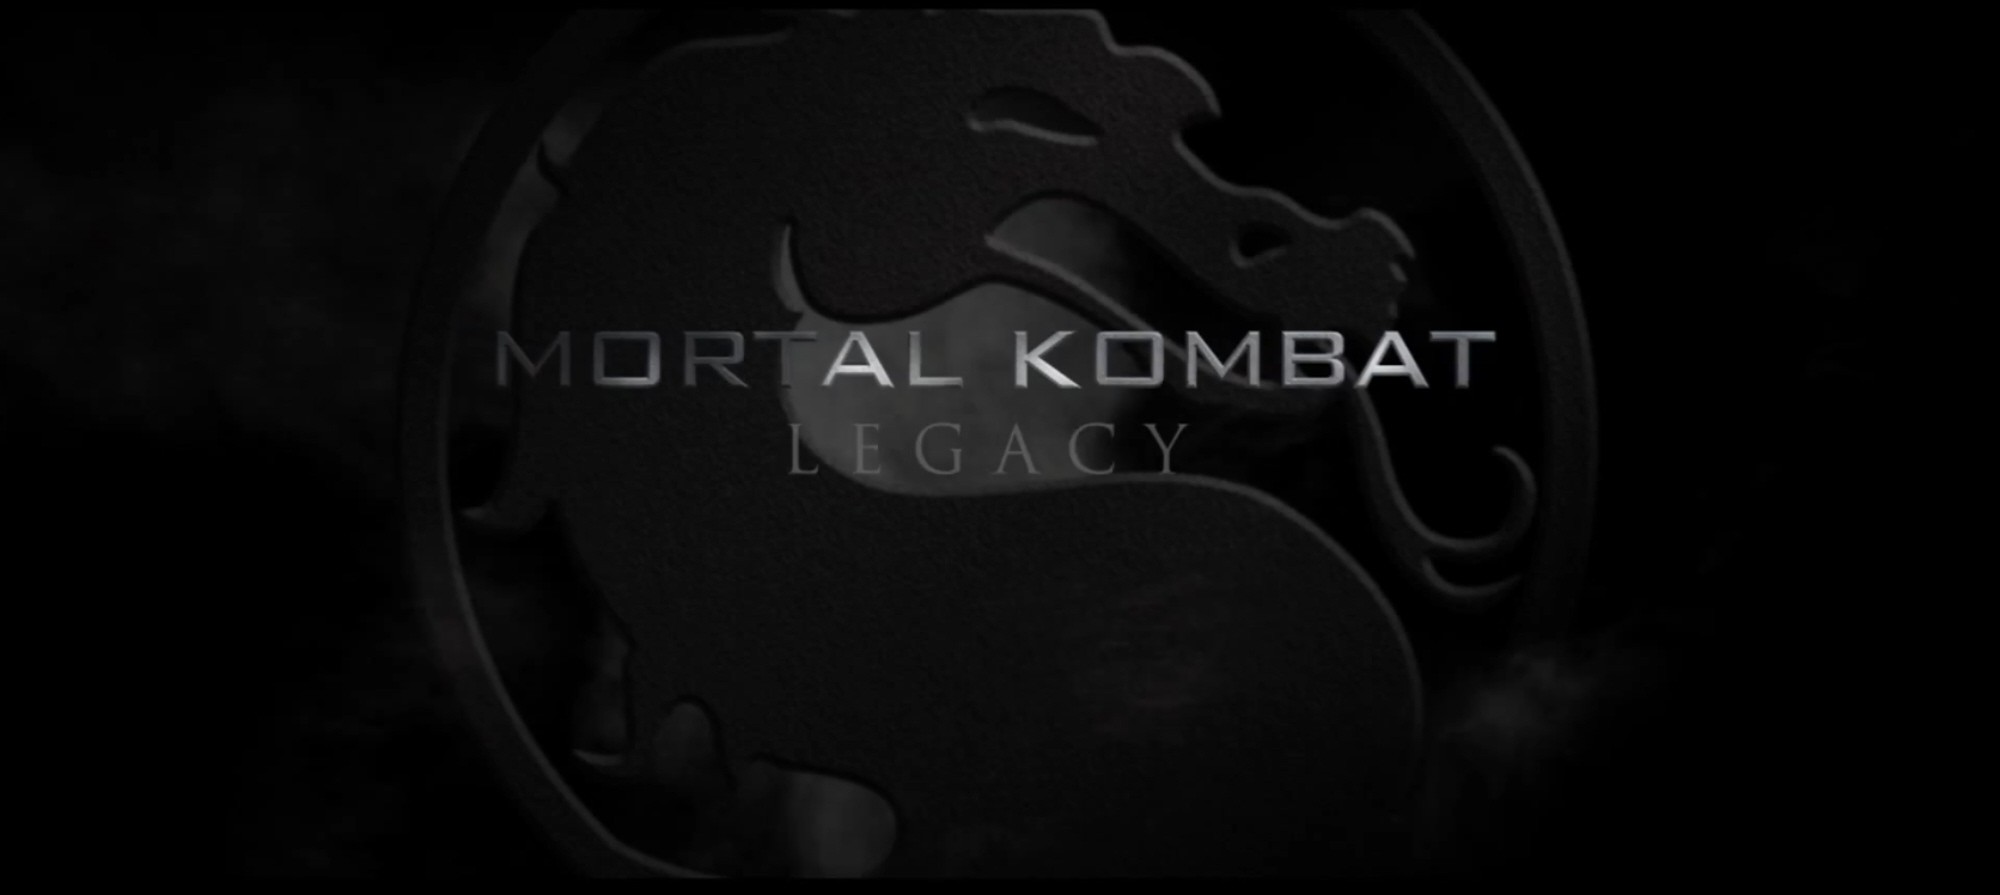 mortal-kombat-legacy-dragon-logo